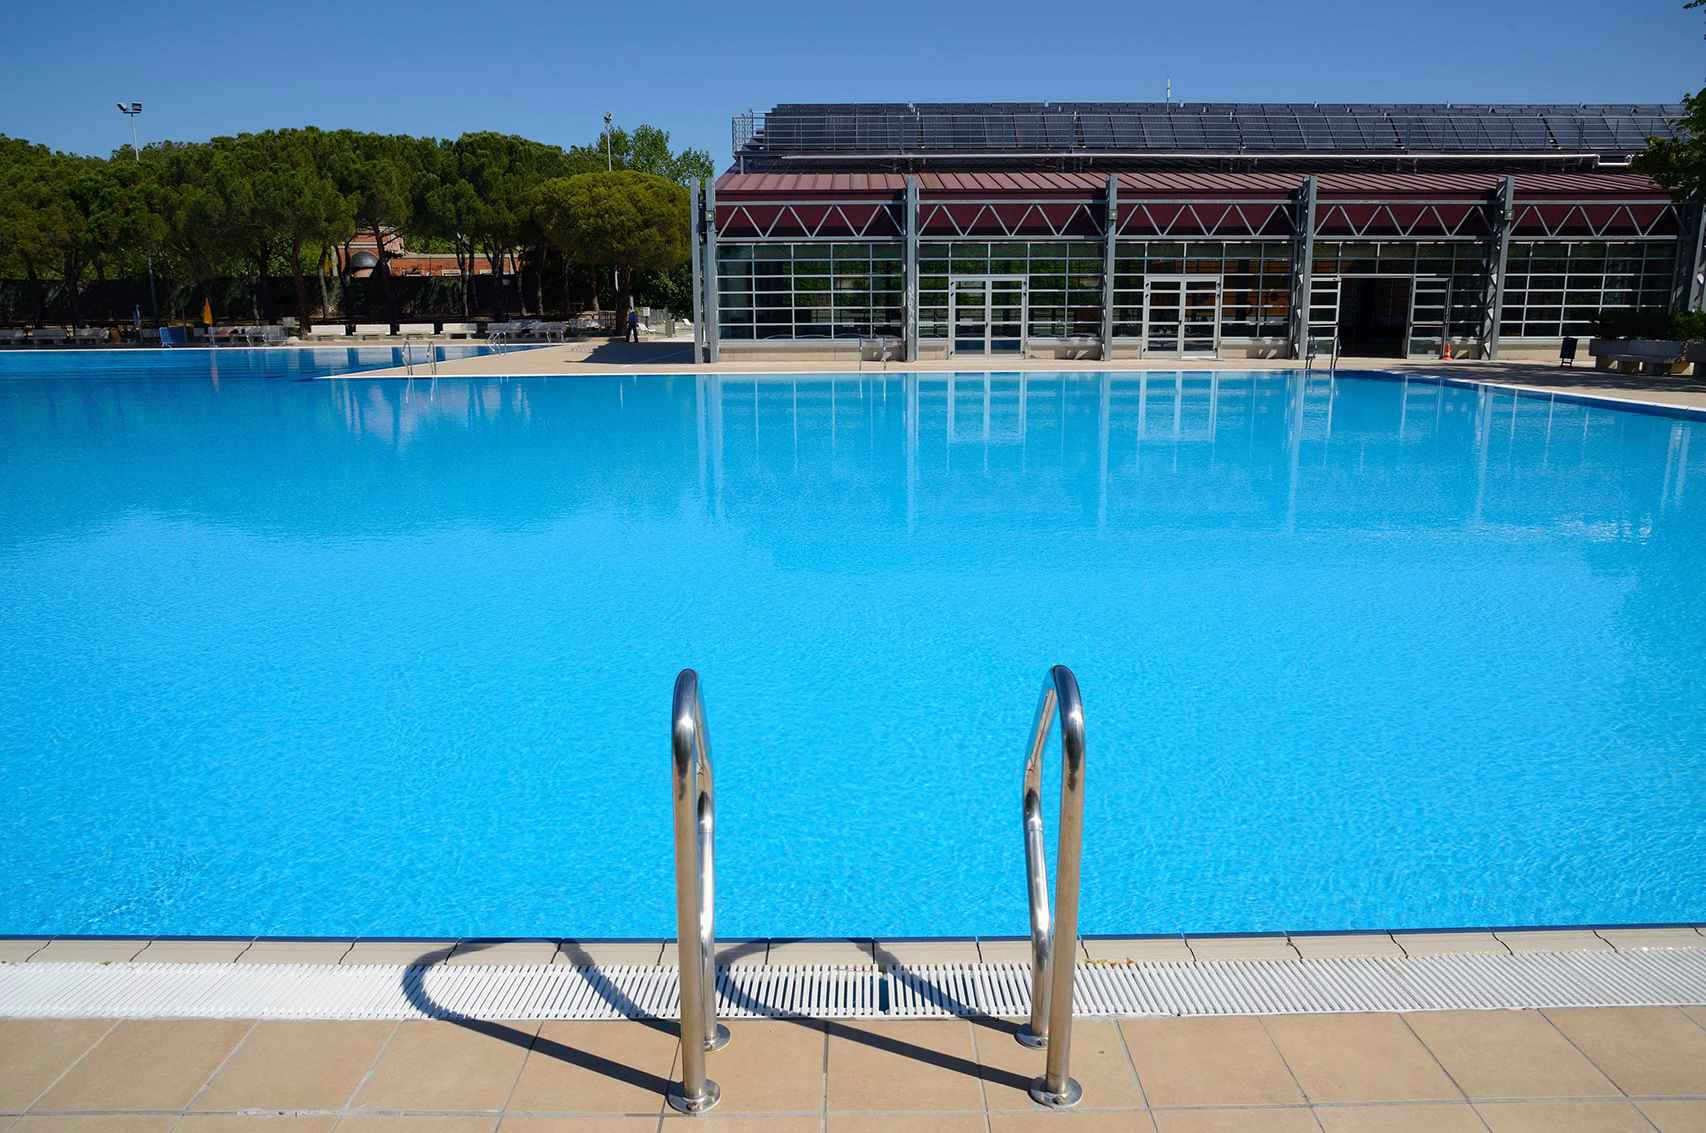 Una de las piscinas municipales de verano en Madrid